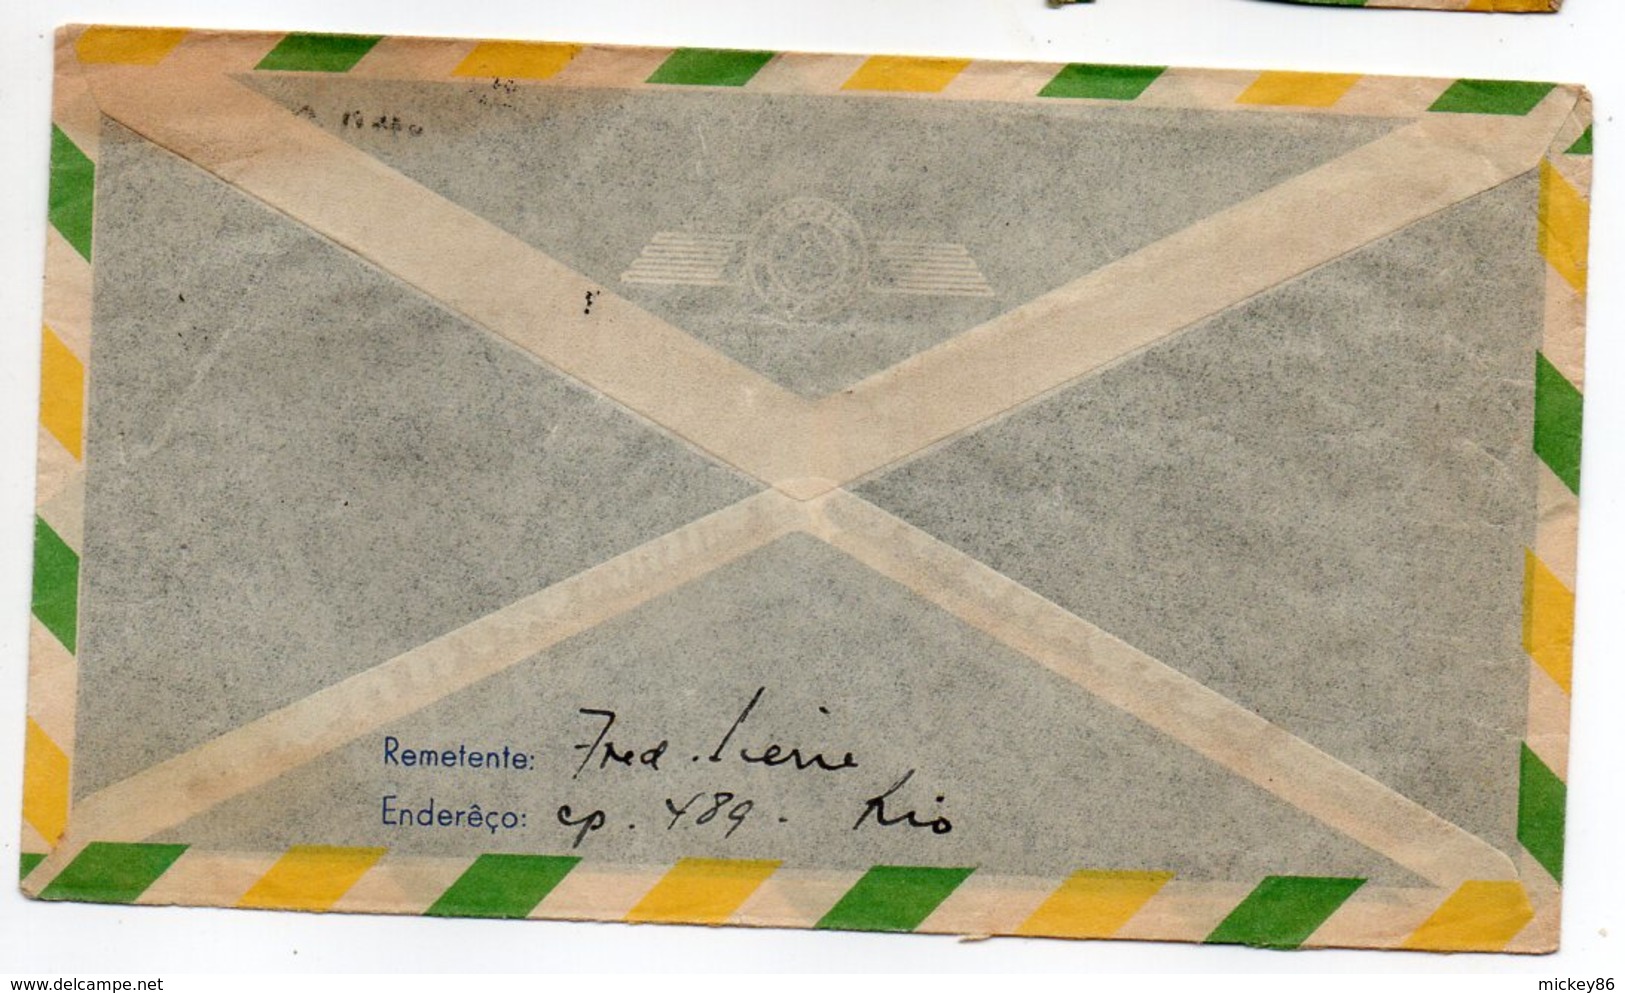 Brésil--1947--lettre  Pour Toulouse (France)--timbres  -- Cachets - Briefe U. Dokumente